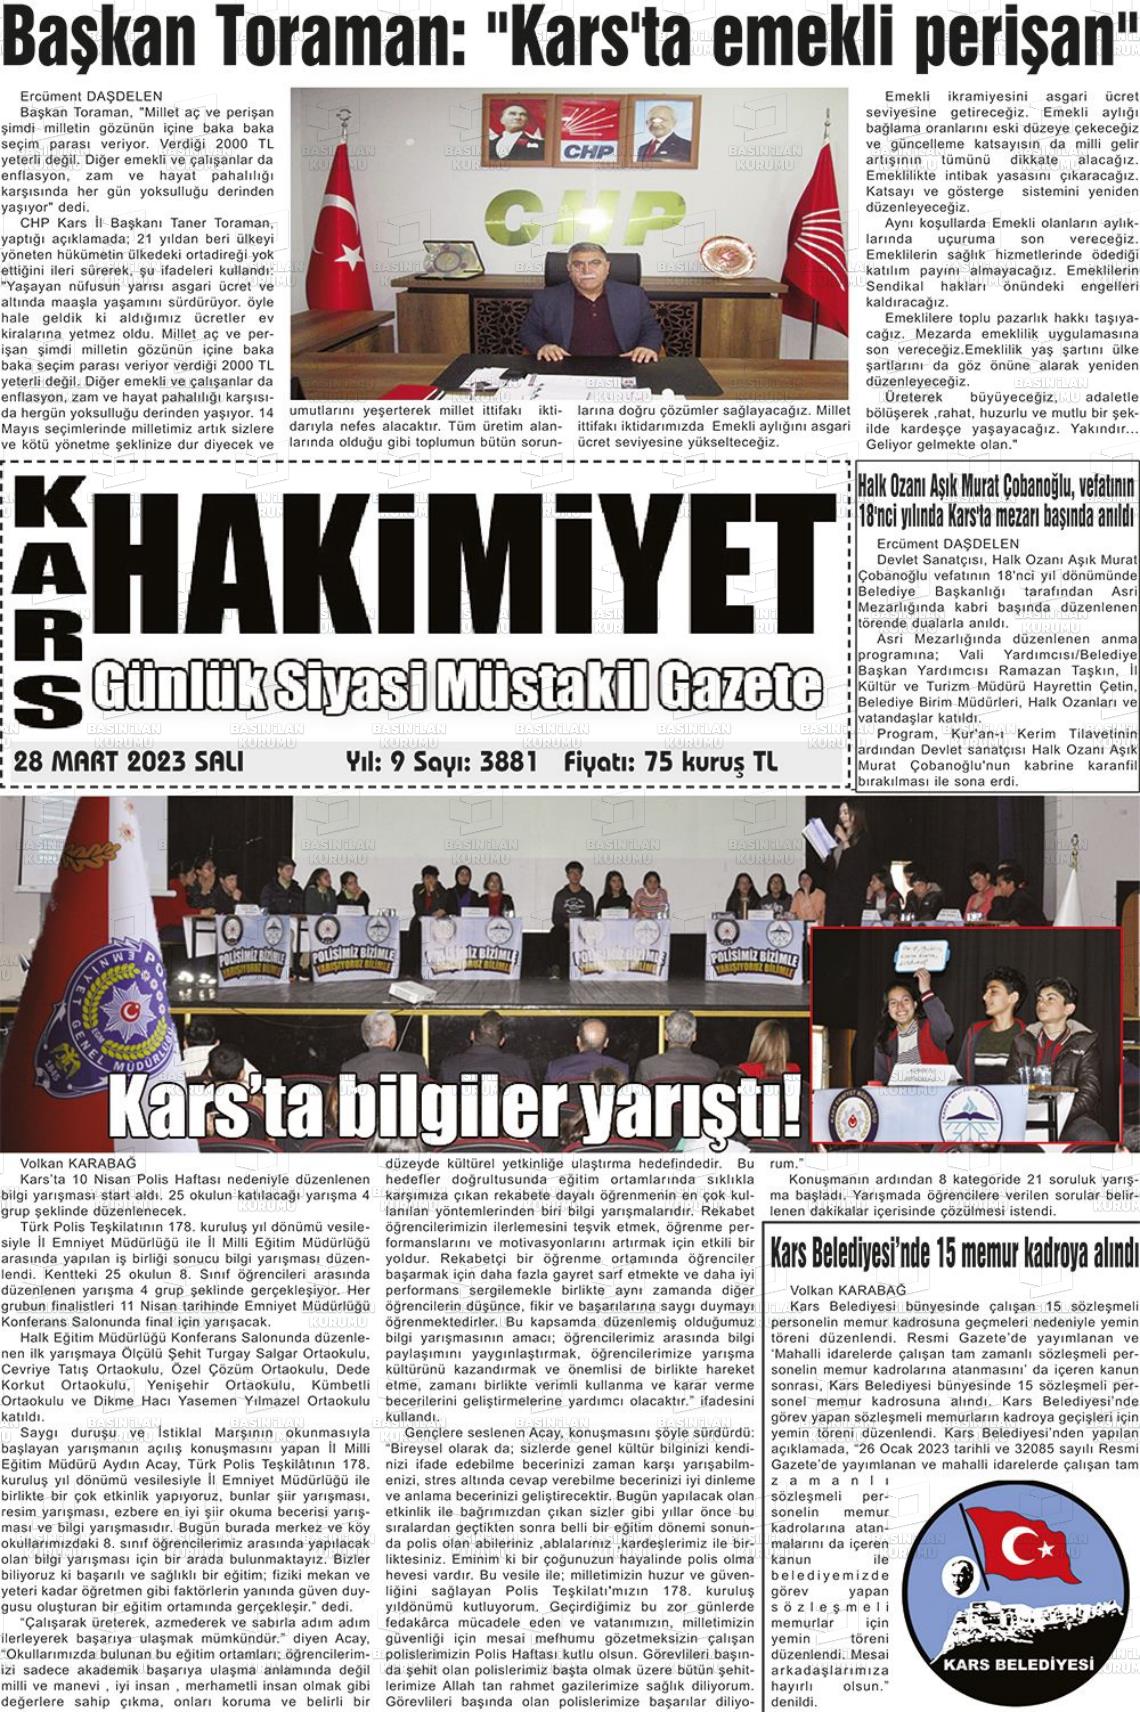 28 Mart 2023 Kars Manşet Gazete Manşeti